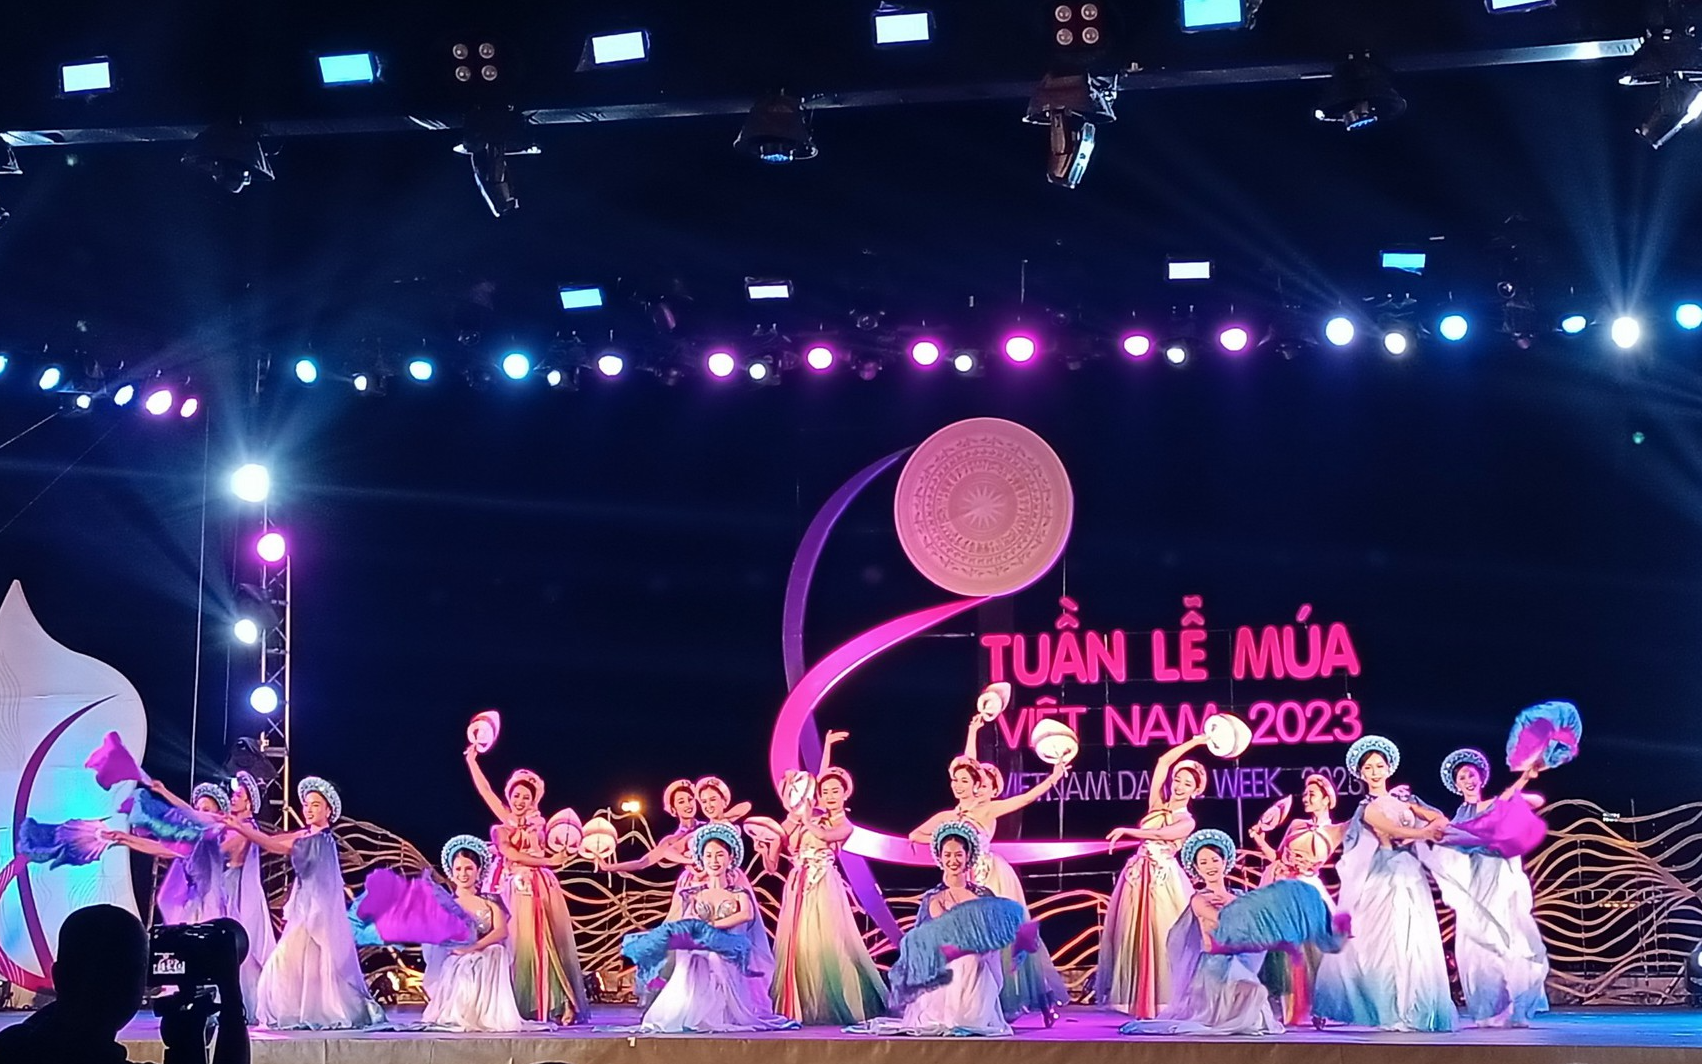 Vũ điệu nào ra mắt trong Tuần lễ Múa Việt Nam 2023 khiến ai xem cũng phải phát cuồng?